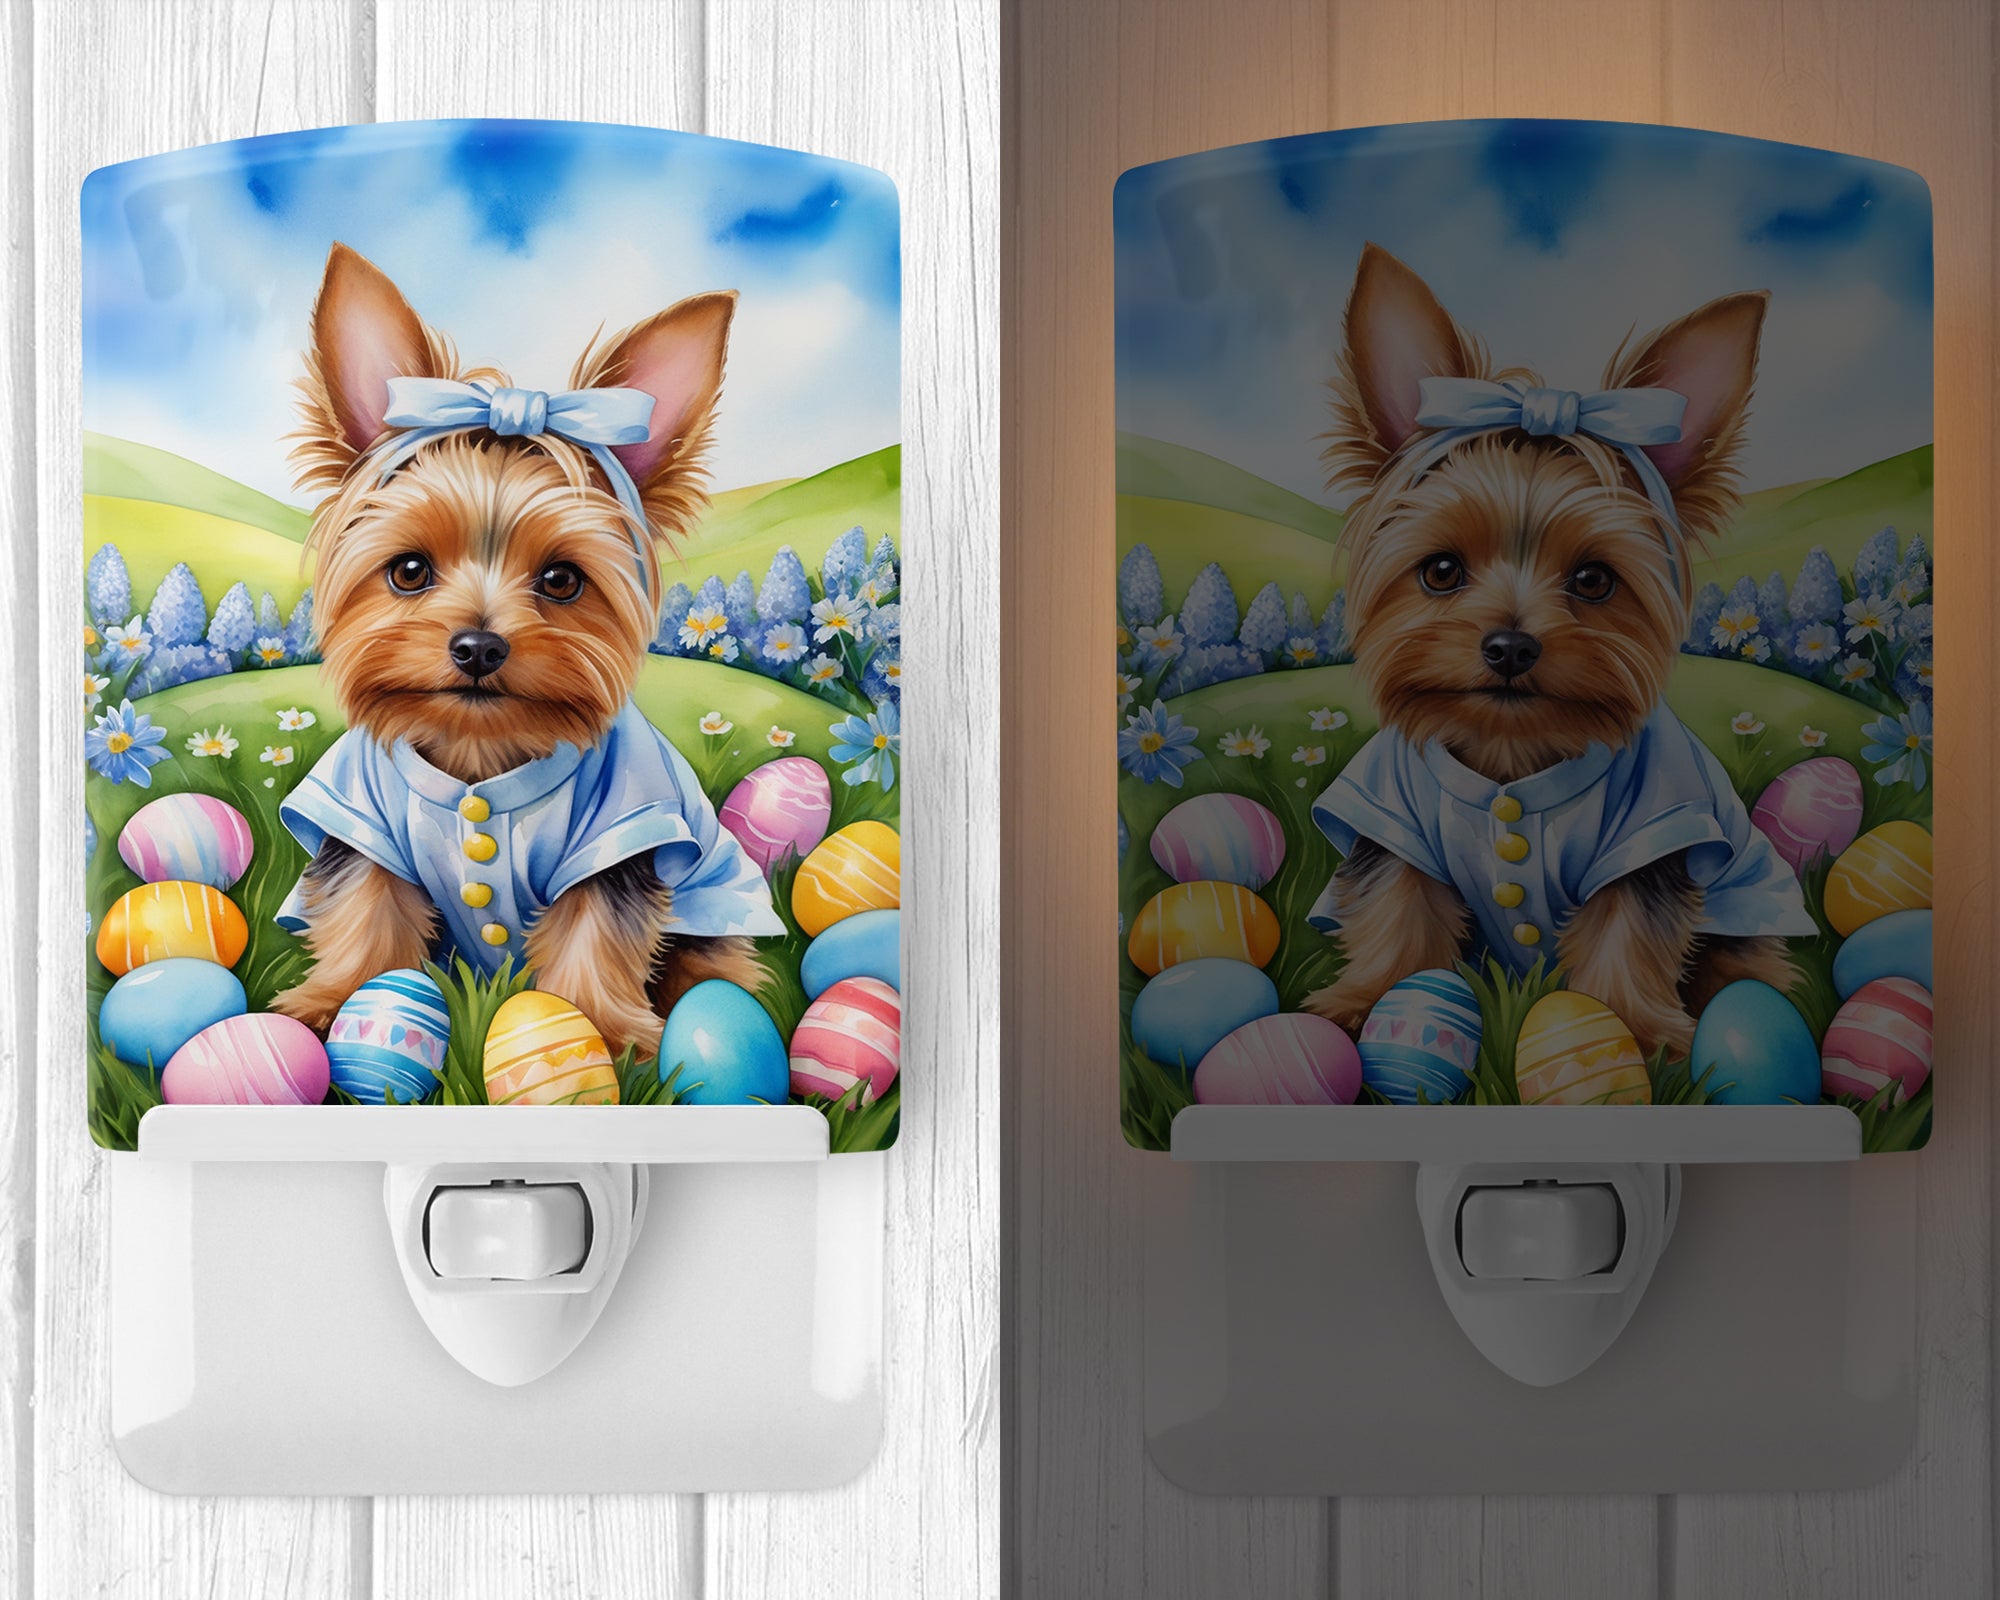 Buy this Silky Terrier Easter Egg Hunt Ceramic Night Light